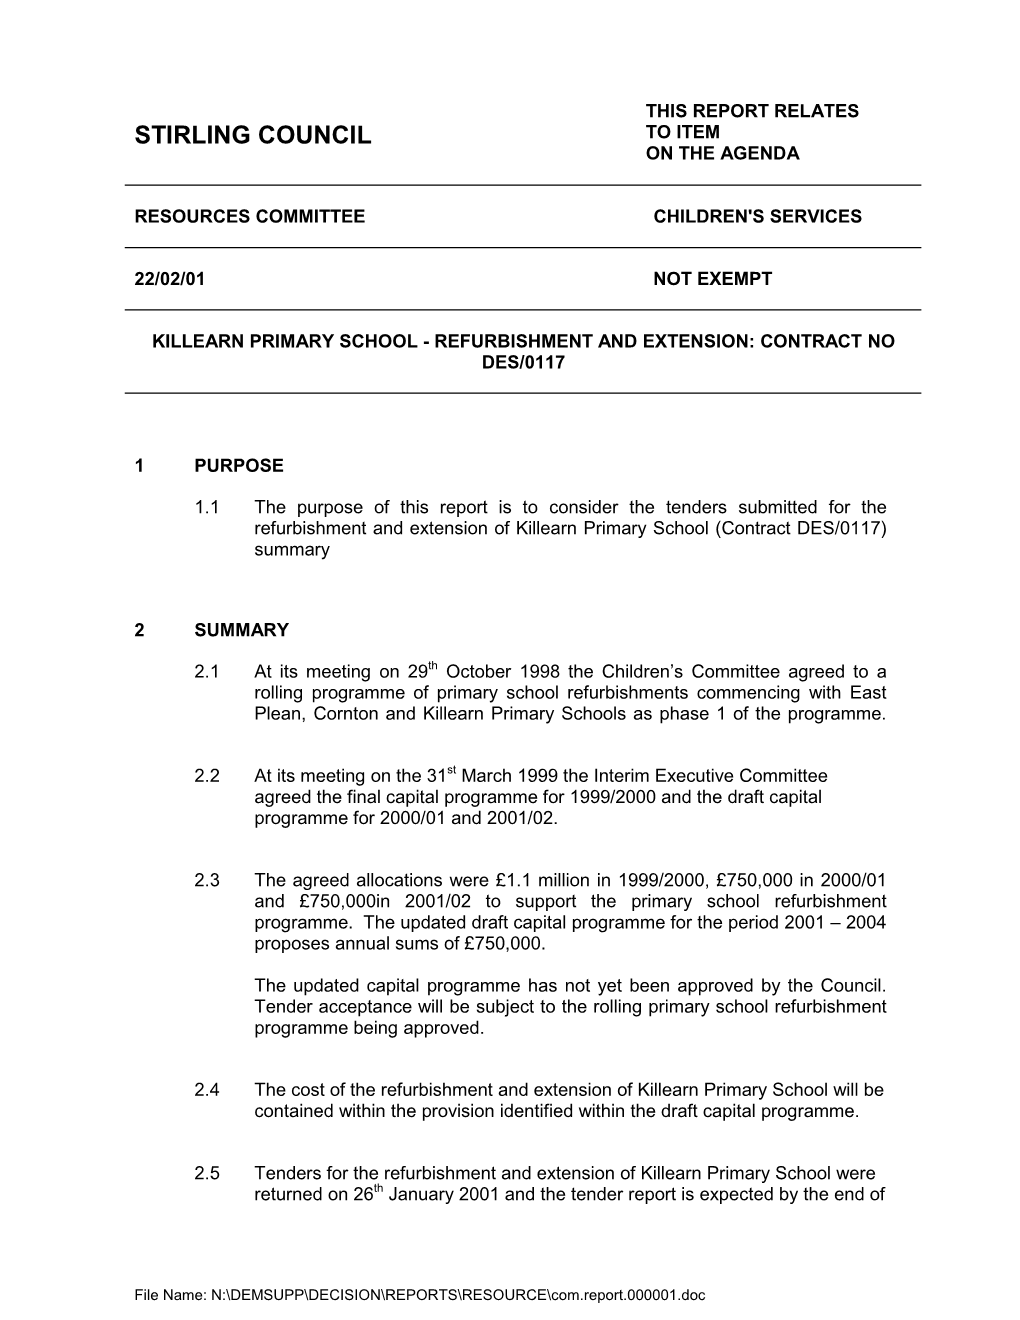 Killearn Primary School - Refurbishment and Extension: Contract No Des/0117